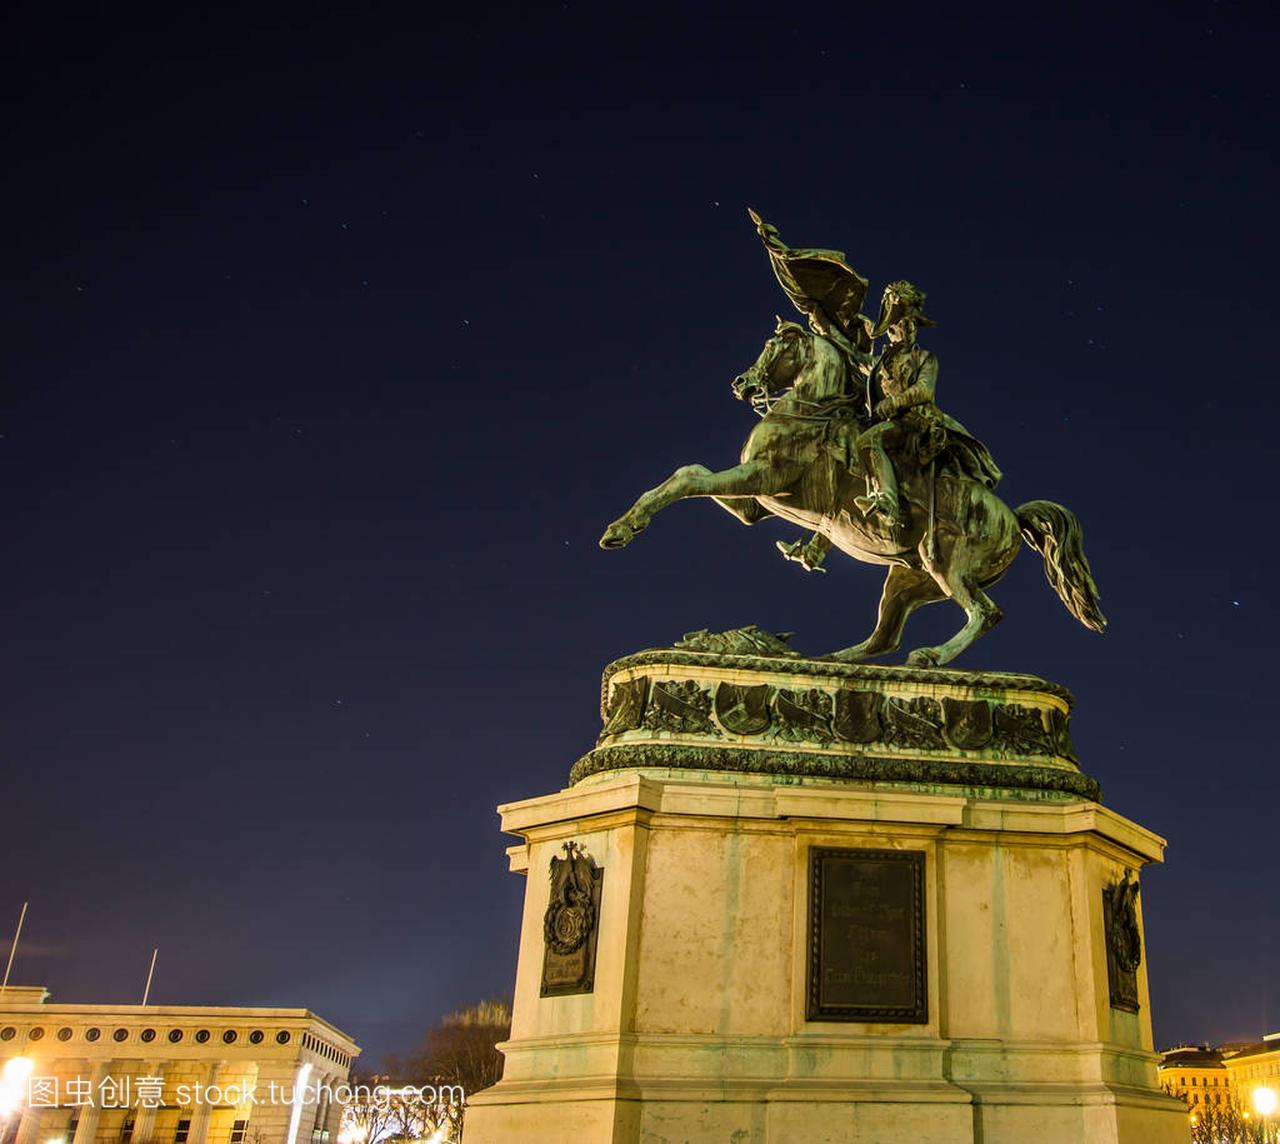 夜景的马术奥地利英雄雕像: 查尔斯公爵的弹丸